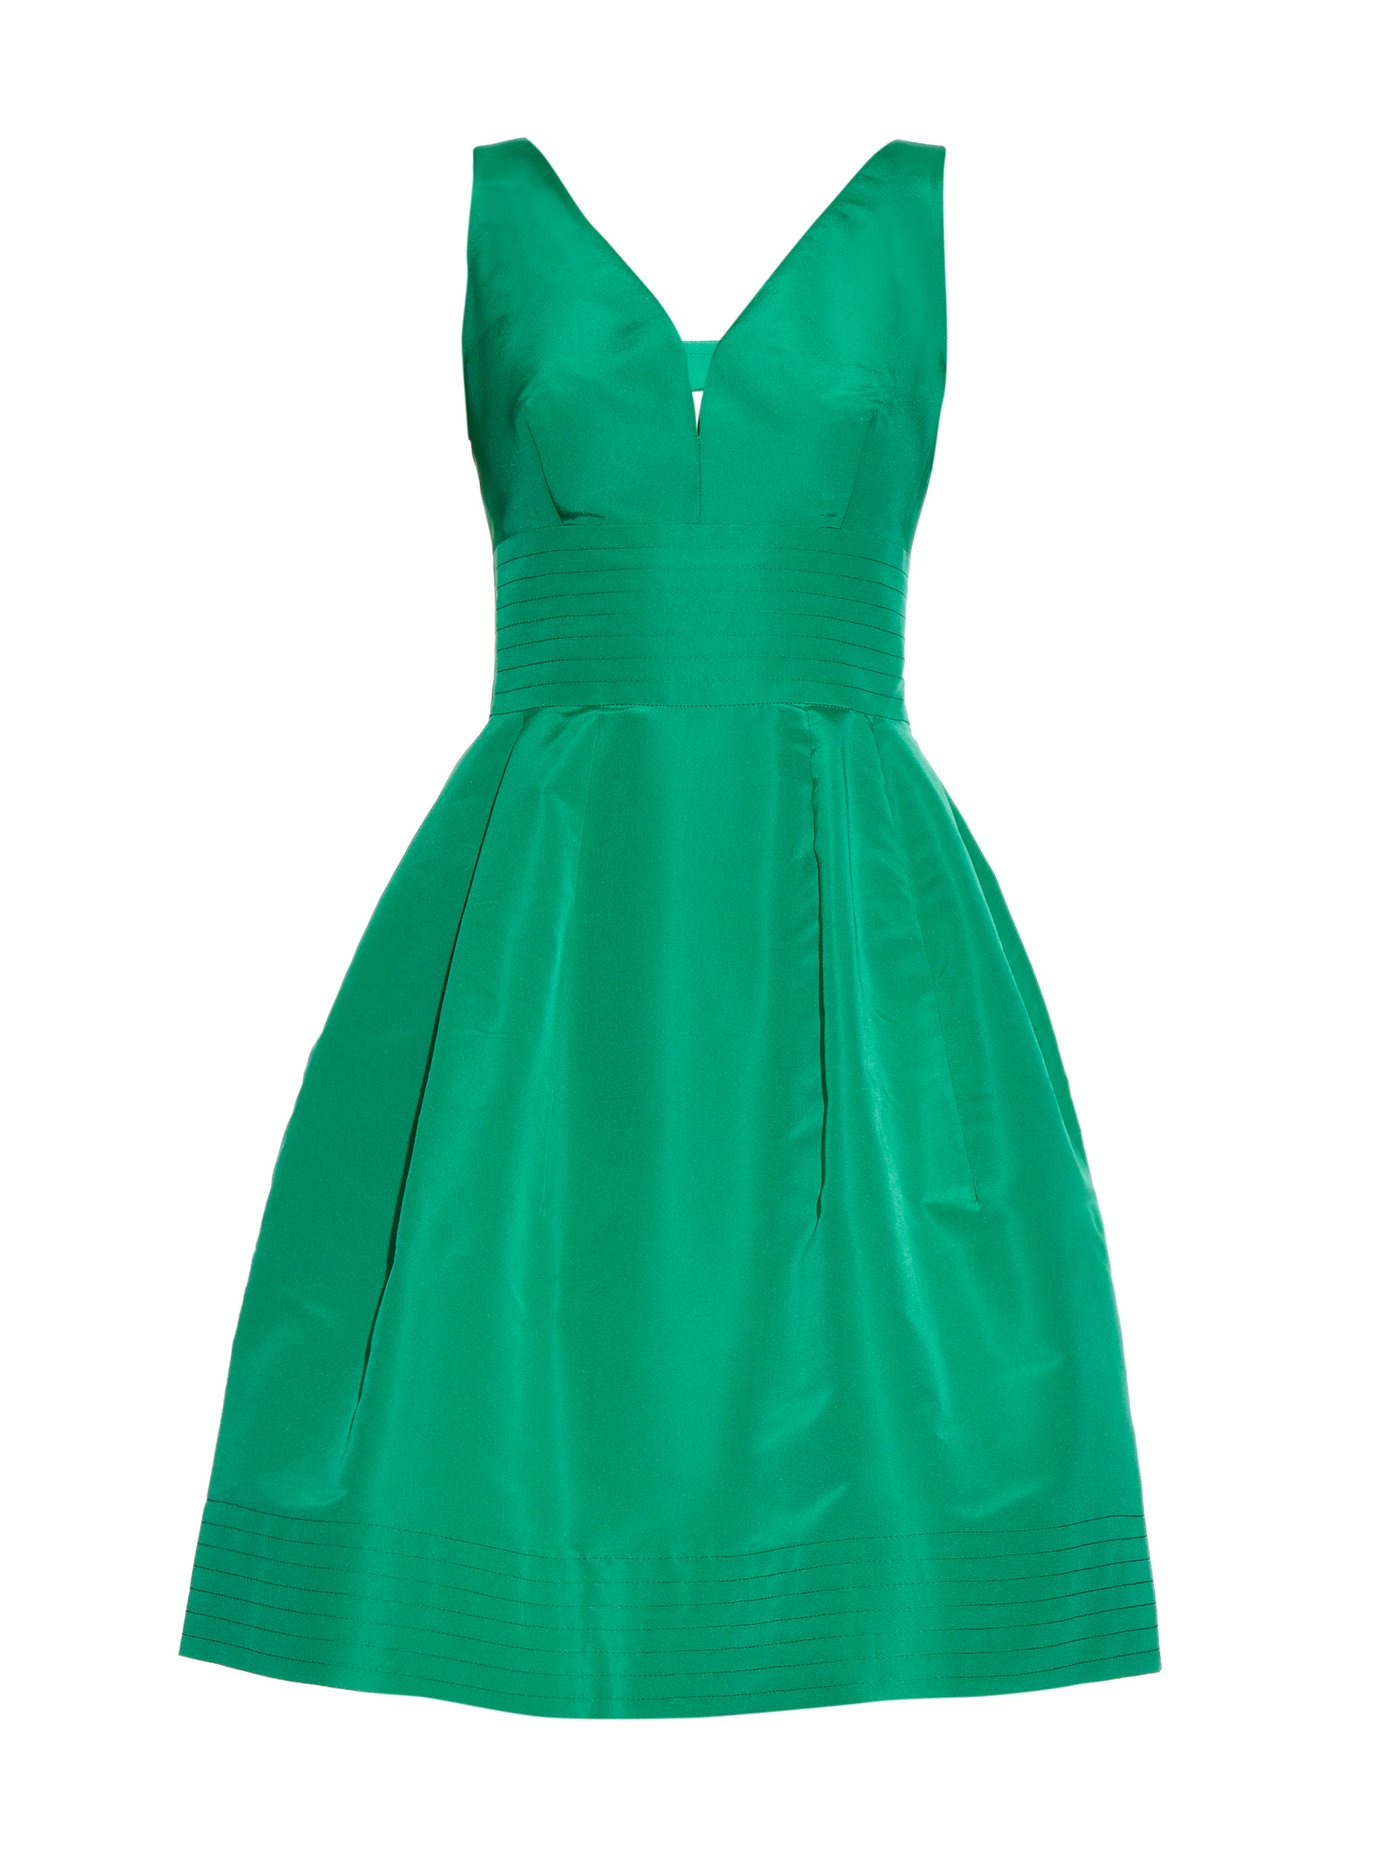 oscar de la renta green dress